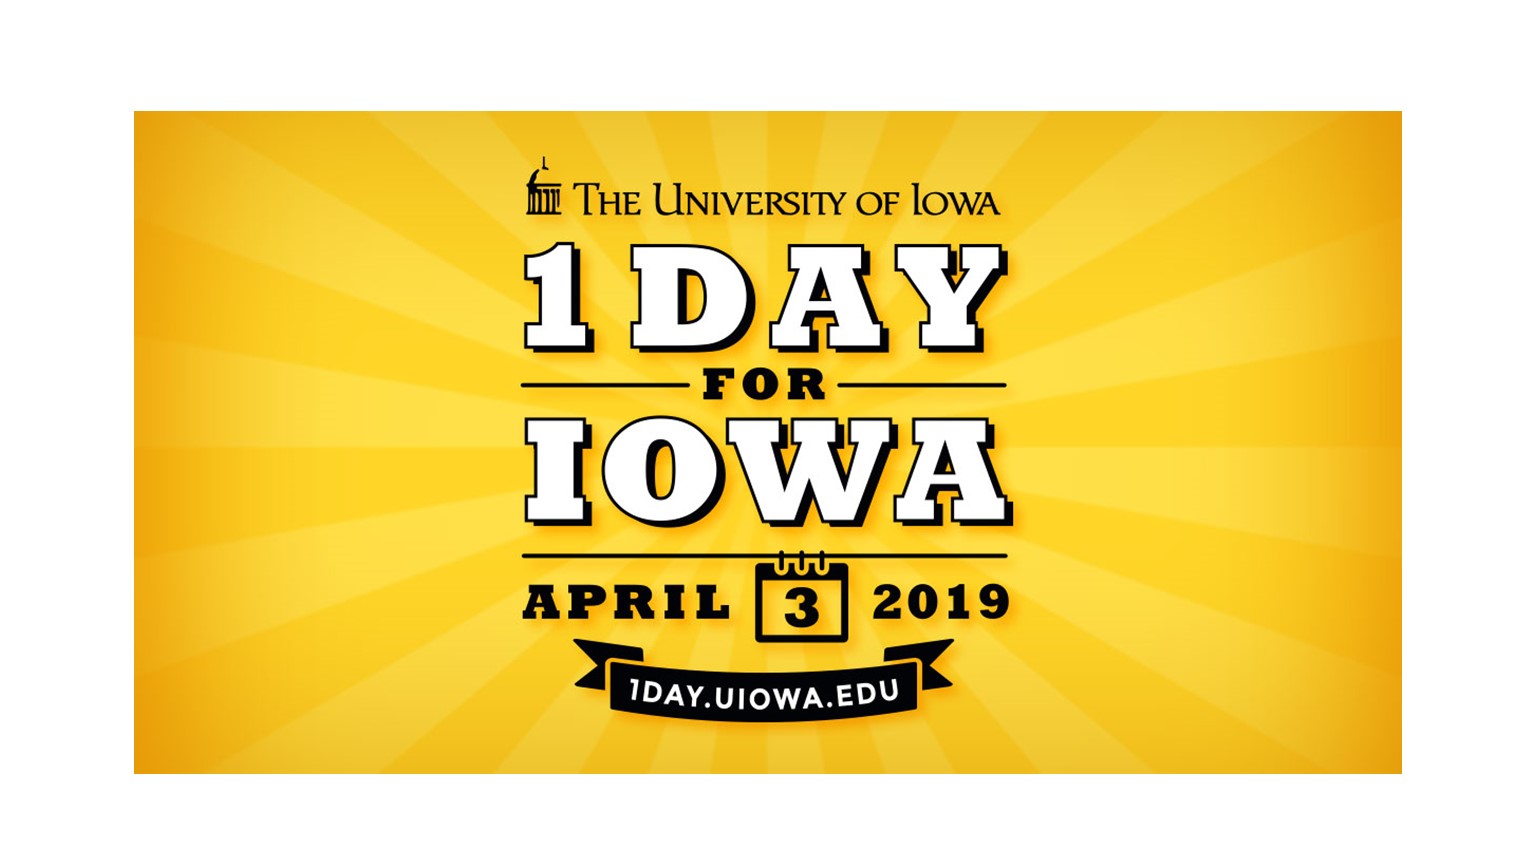 One Day for Iowa - April 3, 2019, 1day.uiowa.edu